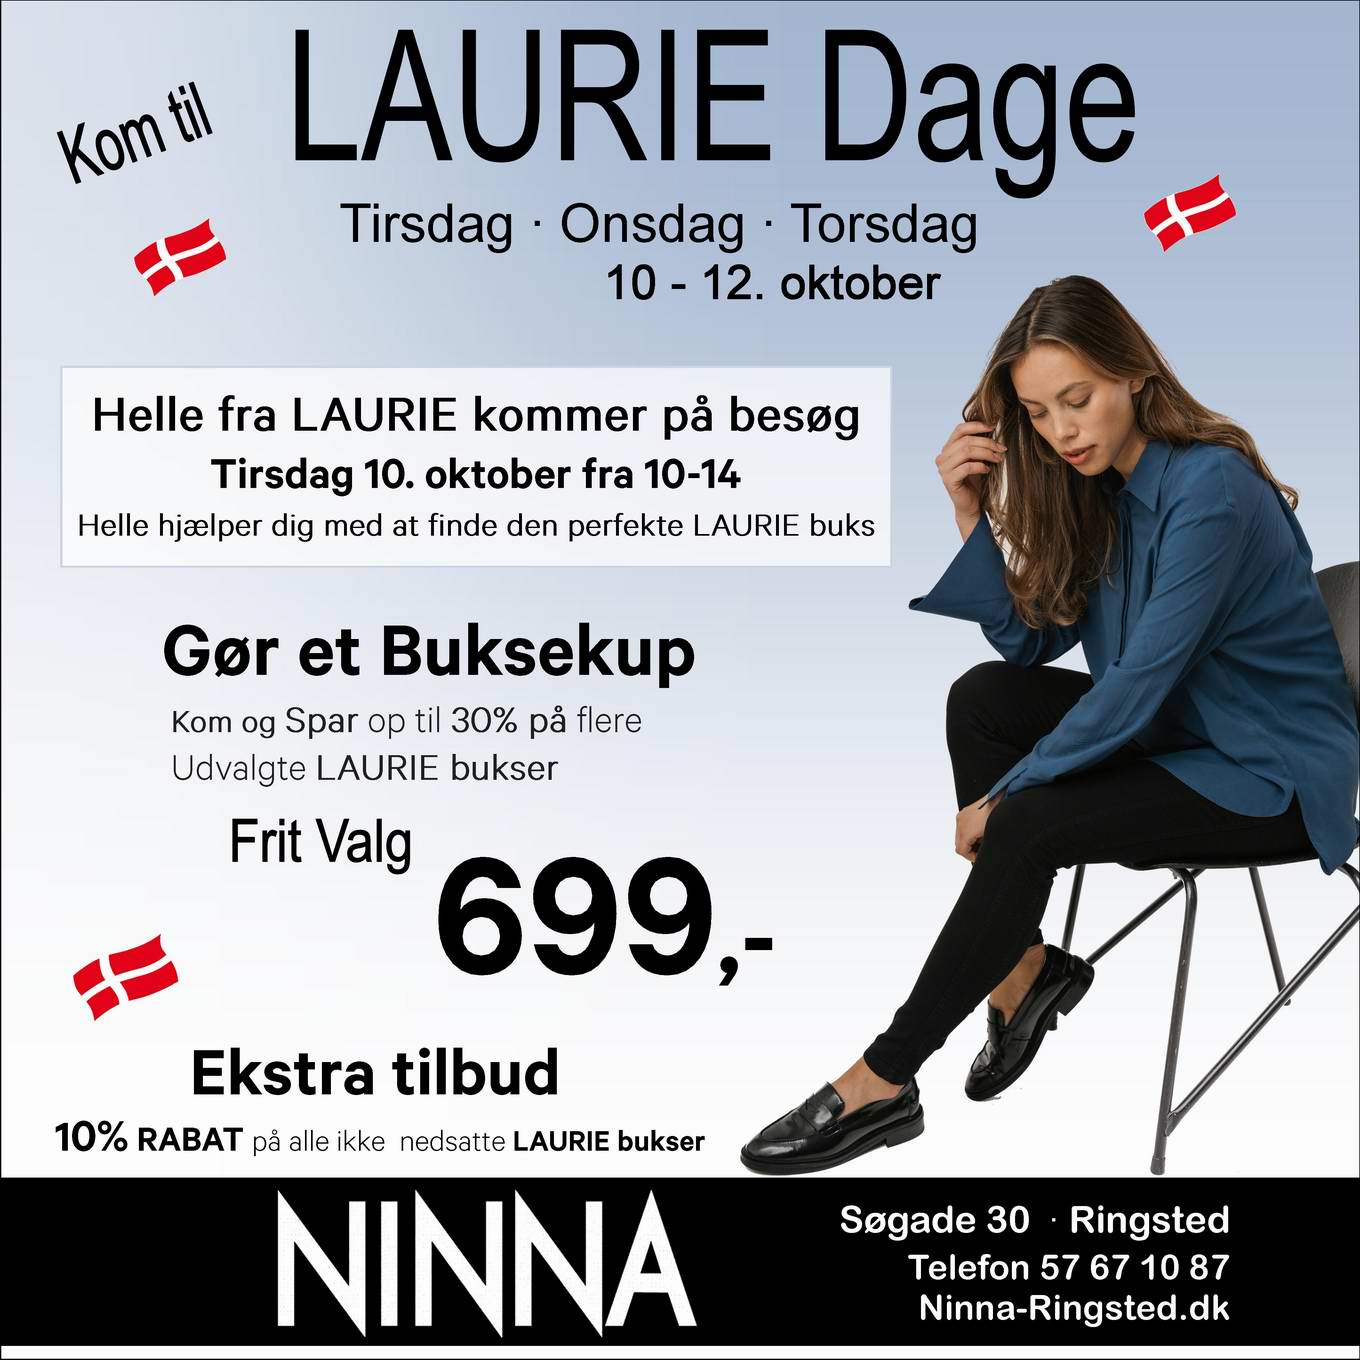 kom til Lauriedage hos NINNA i Ringsted tirsdag - torsdag 10-12 oktober